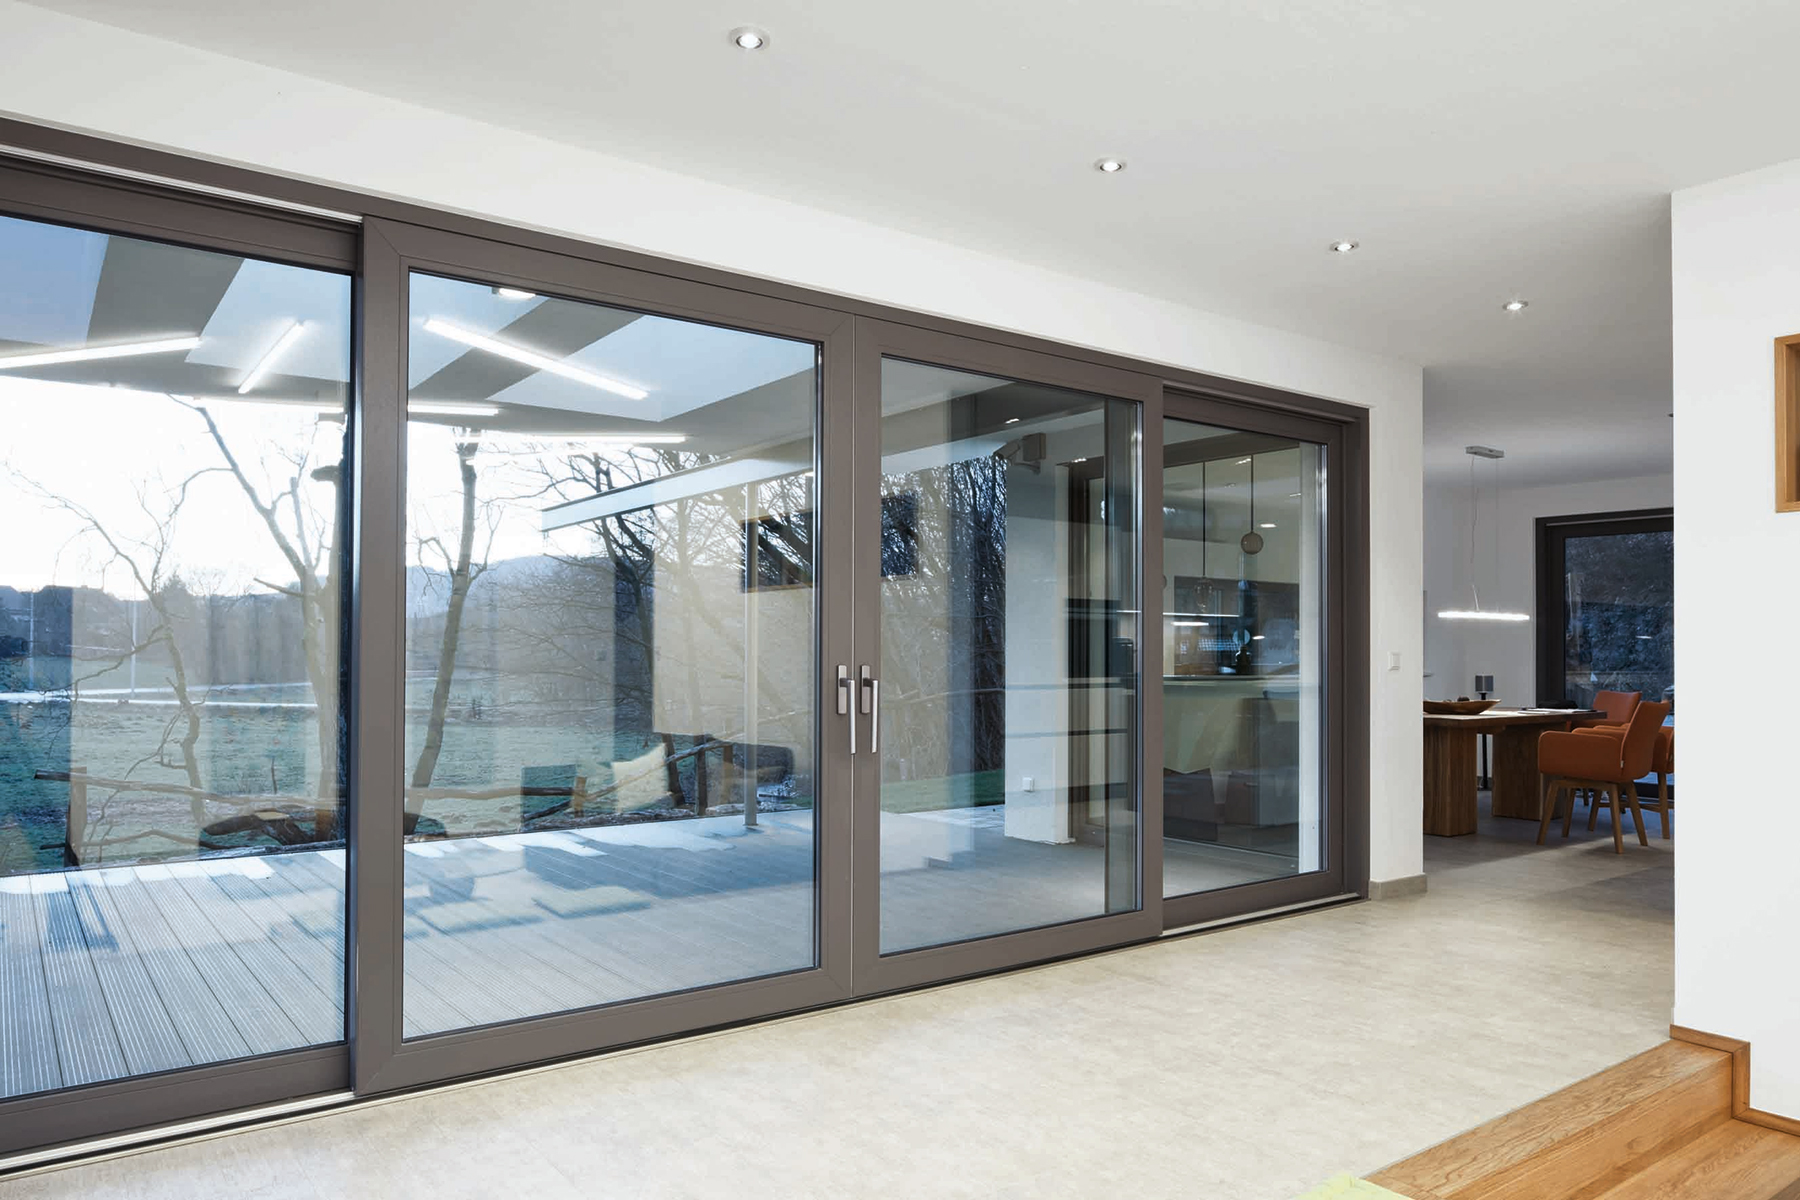 Díky Schüco LivIngSlide získali zákazníci možnost sladit prosklené plochy domu v jednom designu rámů